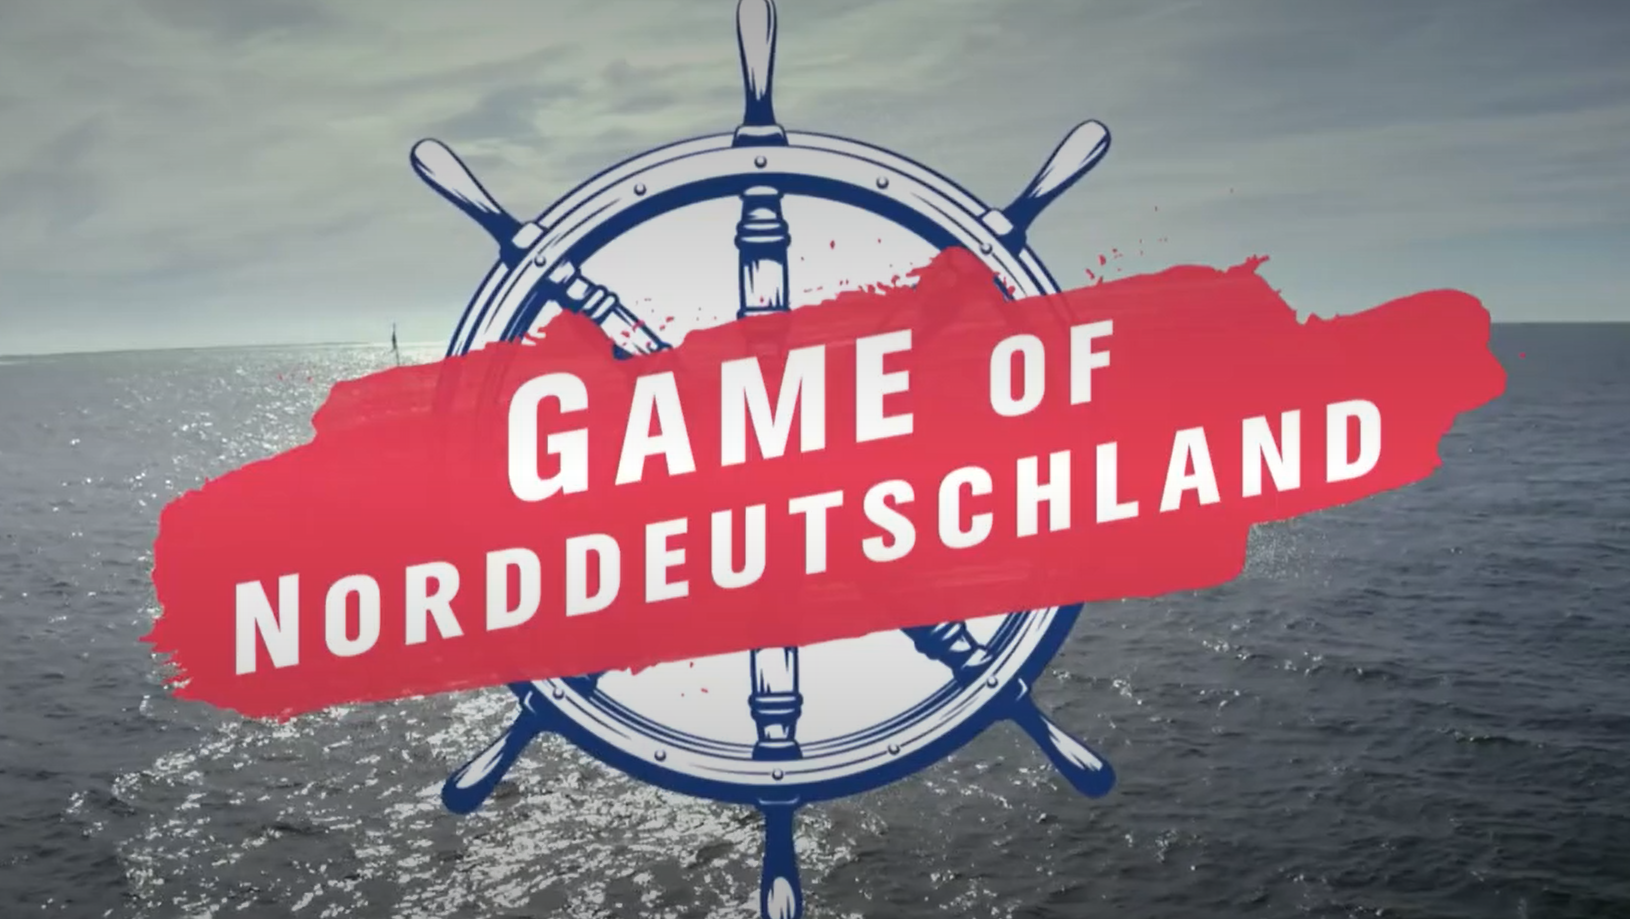 game of norddeutschland